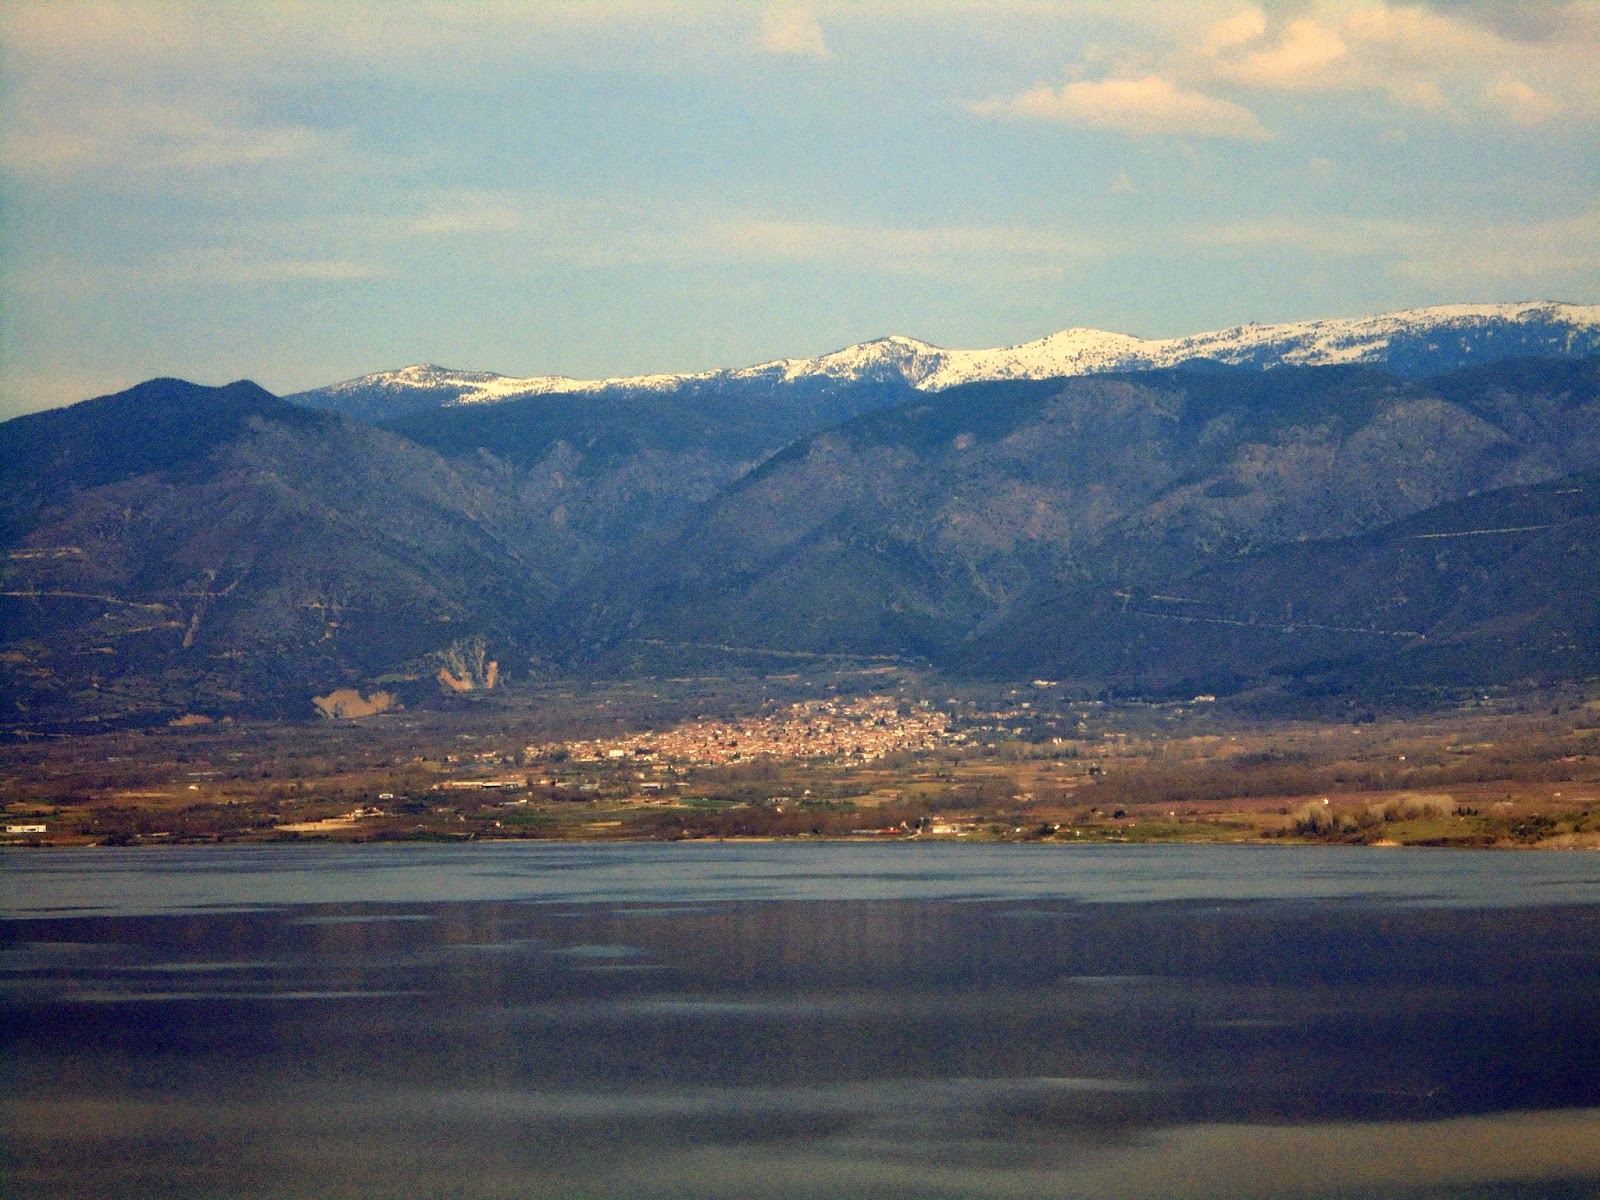 τεχνητή λίμνη Πολυφύτου στο νομό Κοζάνης